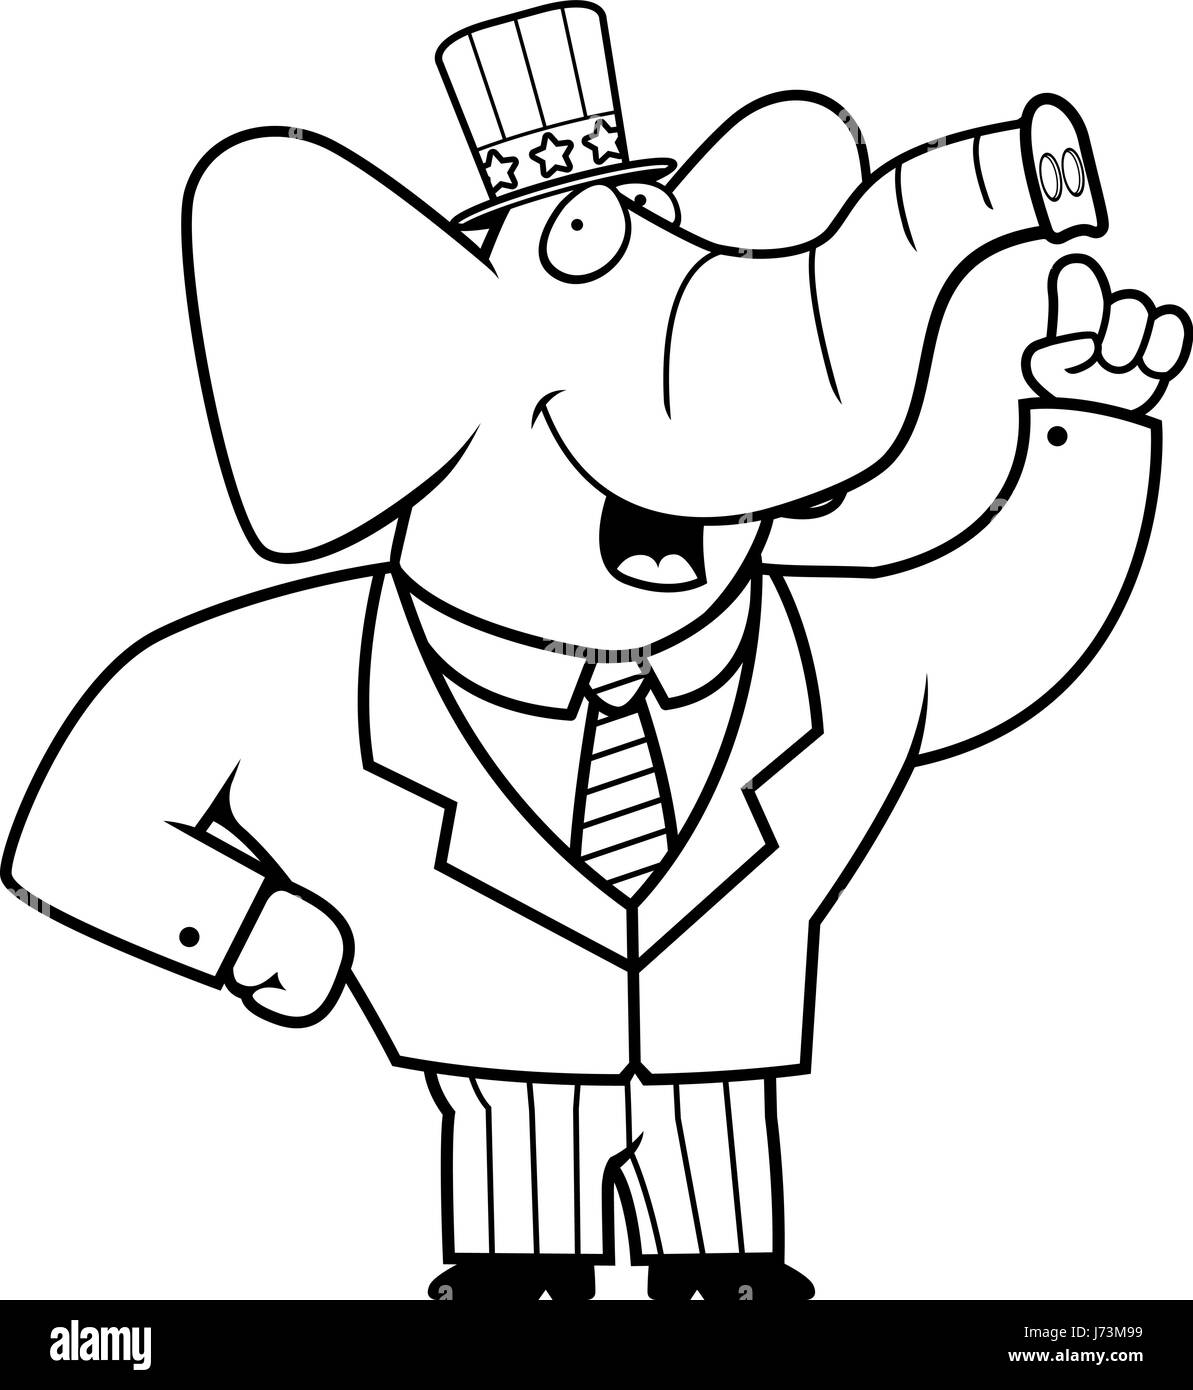 A happy cartoon elephant in a patriotic suit. Stock Vector